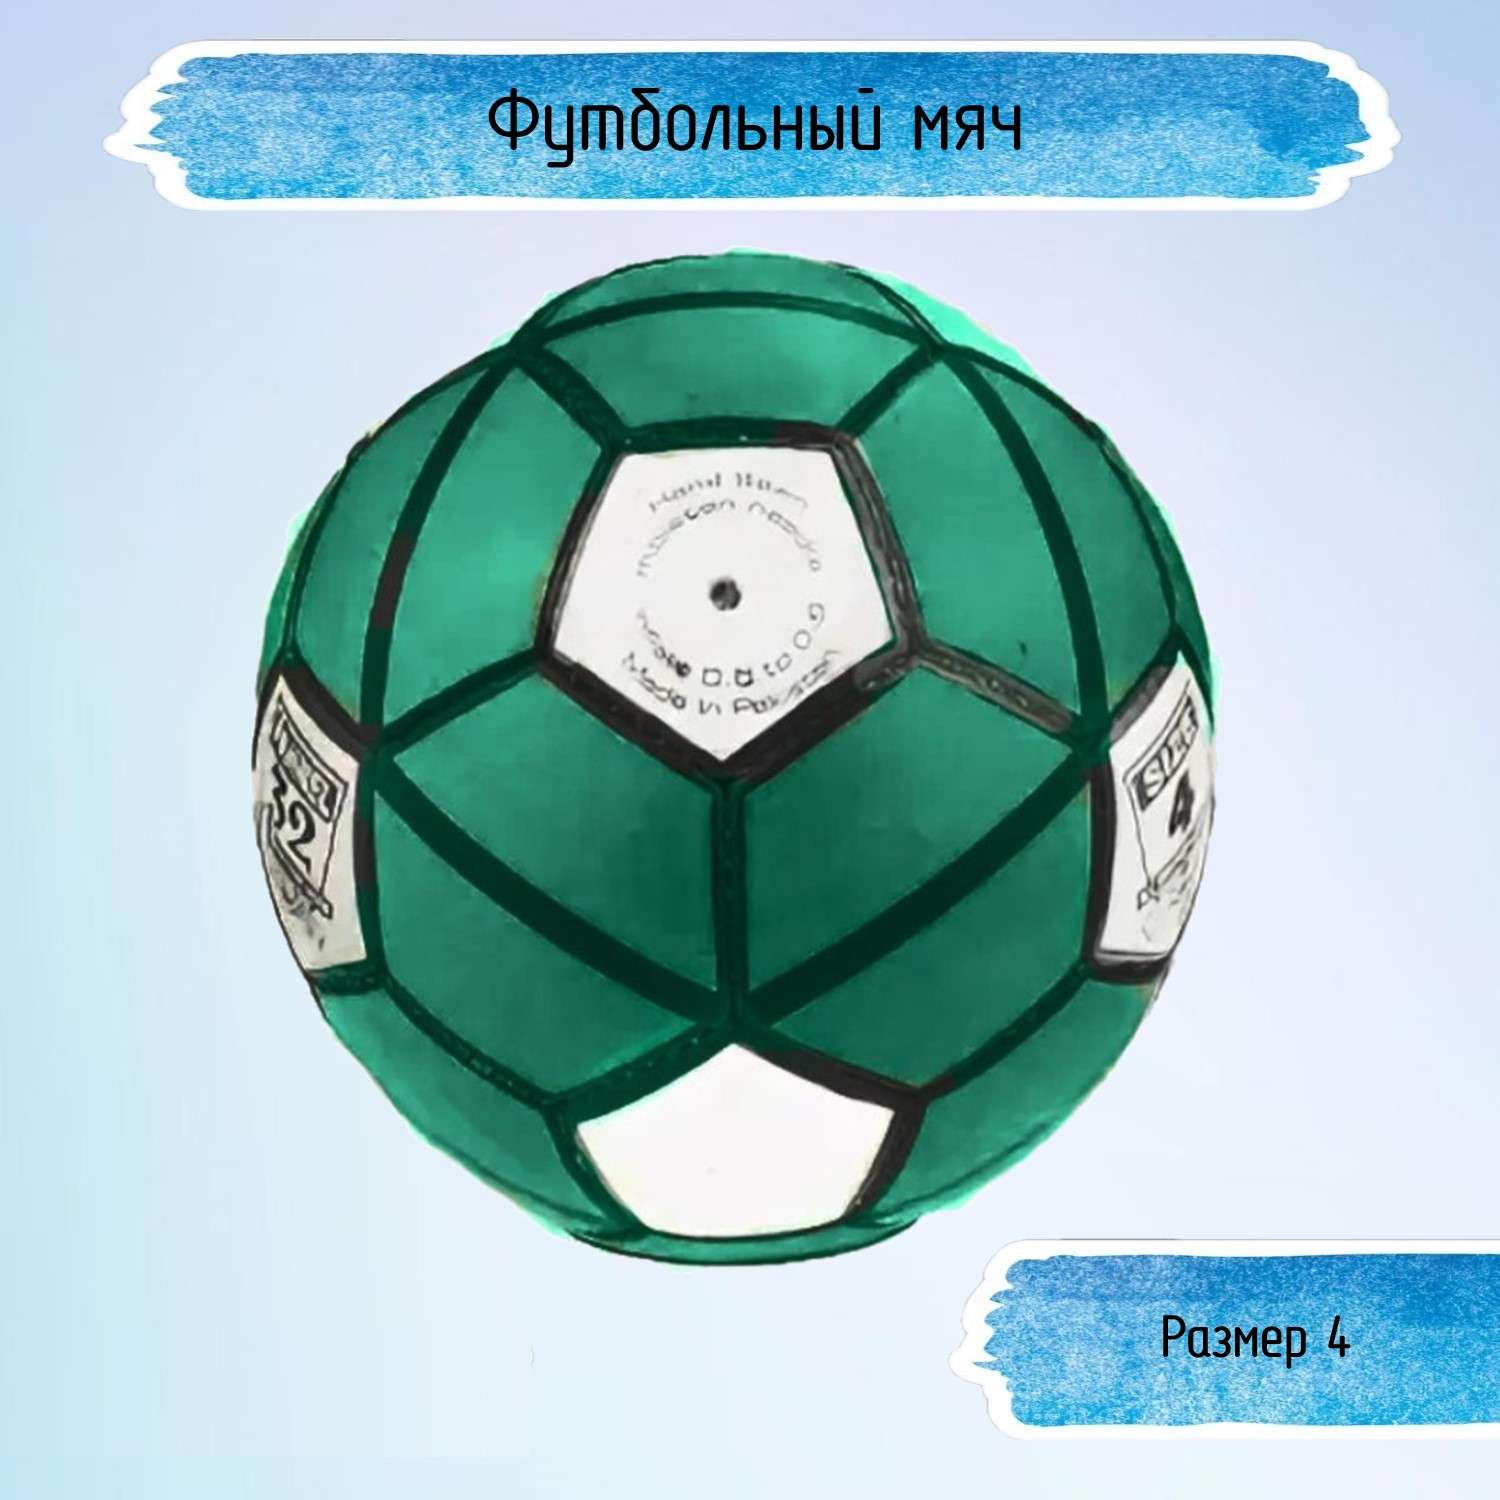 Футбольный мяч Uniglodis 32 панели размер 4 зеленый - фото 1